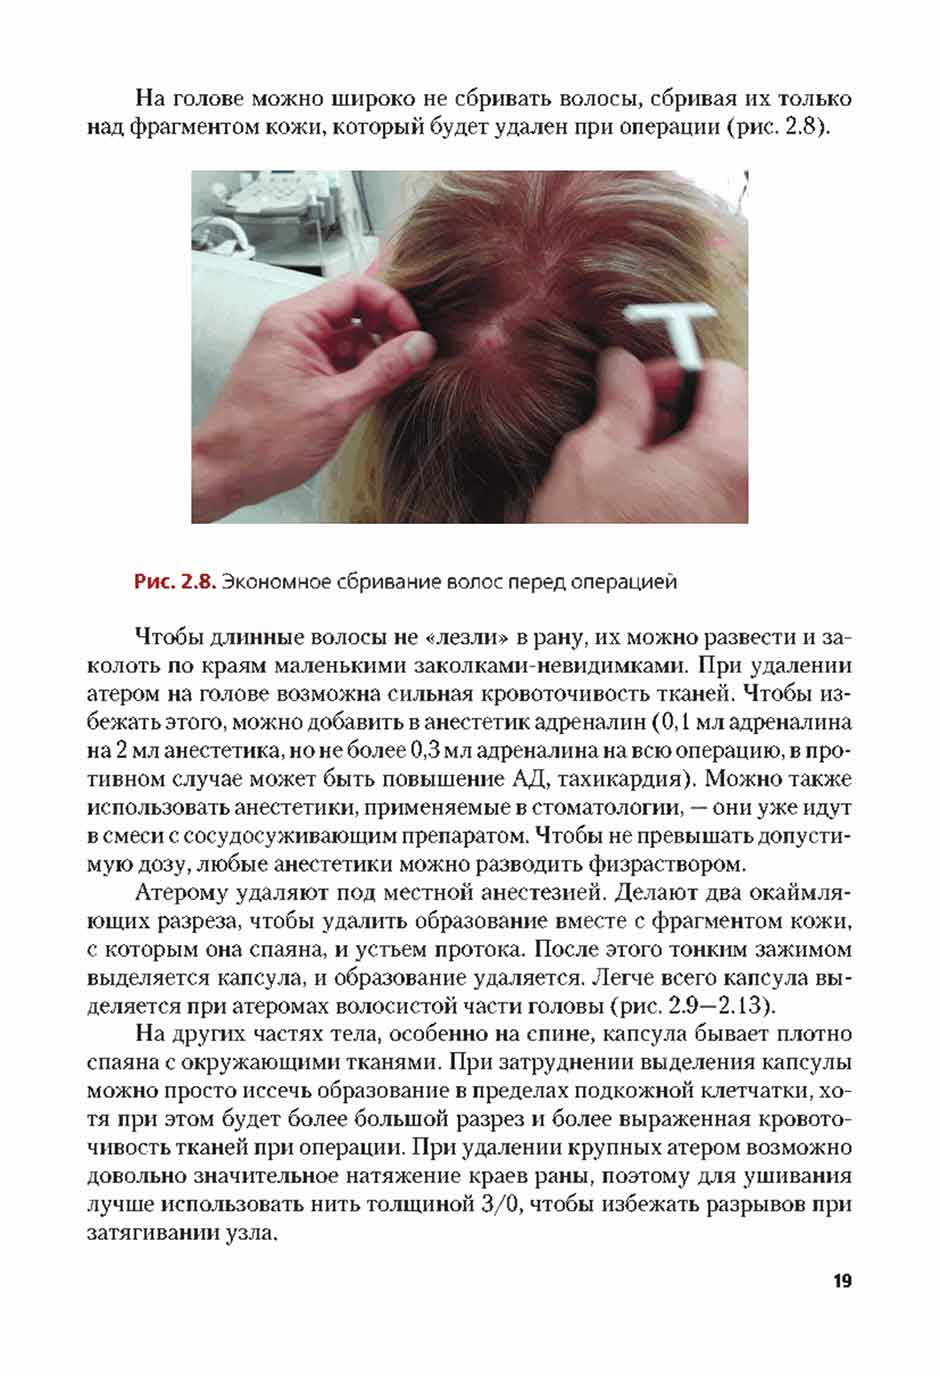 Рис. 2.8. Экономное сбривание волос перед операцией